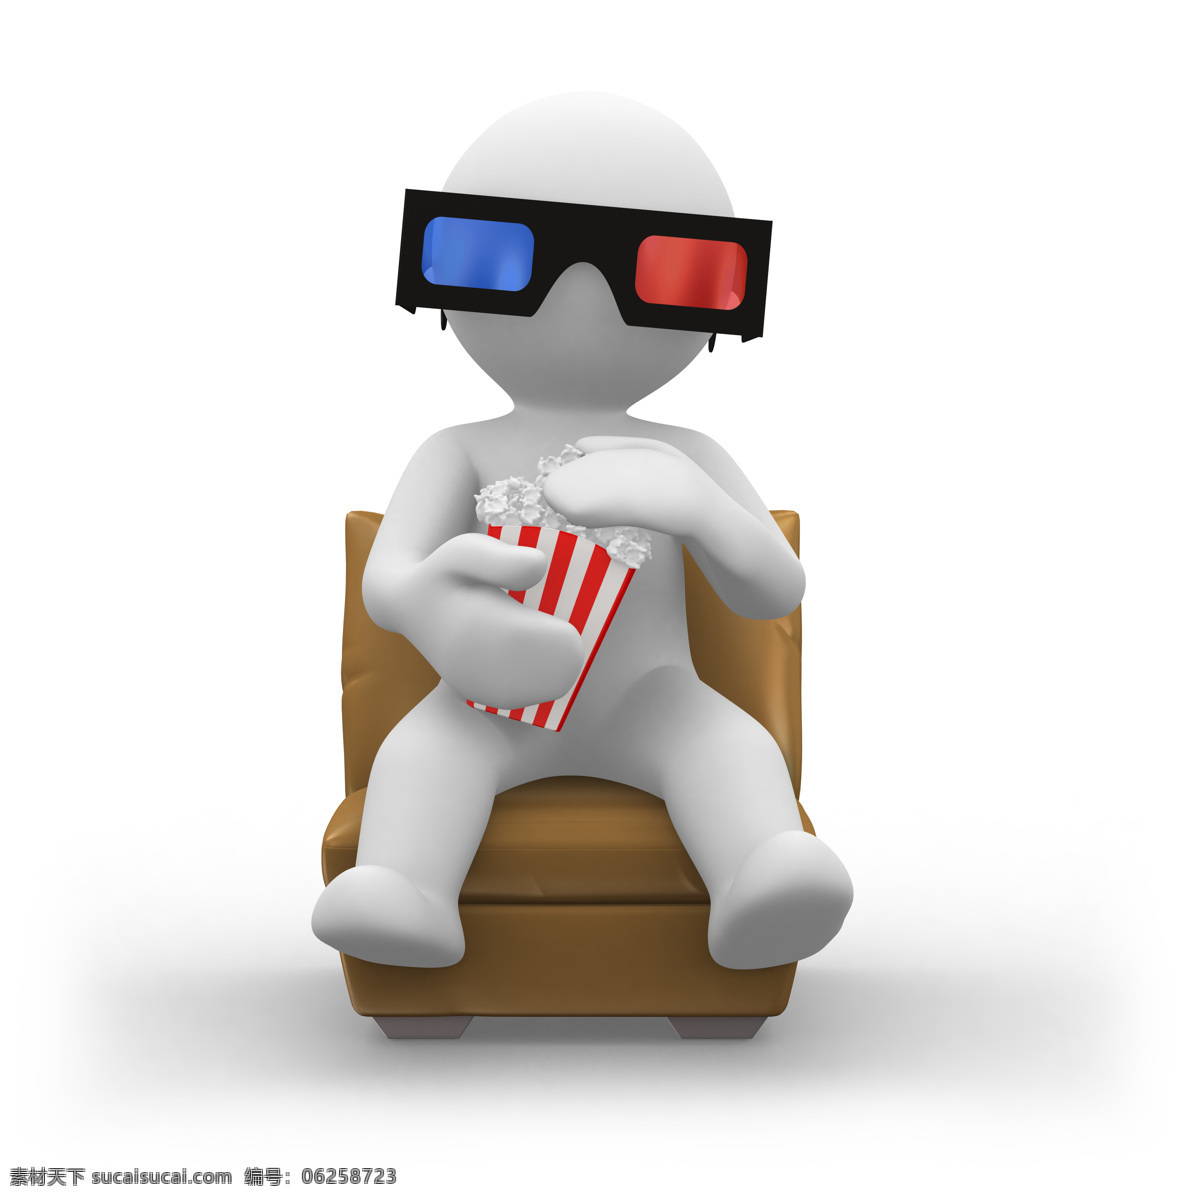 看 3d 电影 小人 爆米花 3d眼镜 3d电影 椅子 电影院 3d白色小人 影音娱乐 生活百科